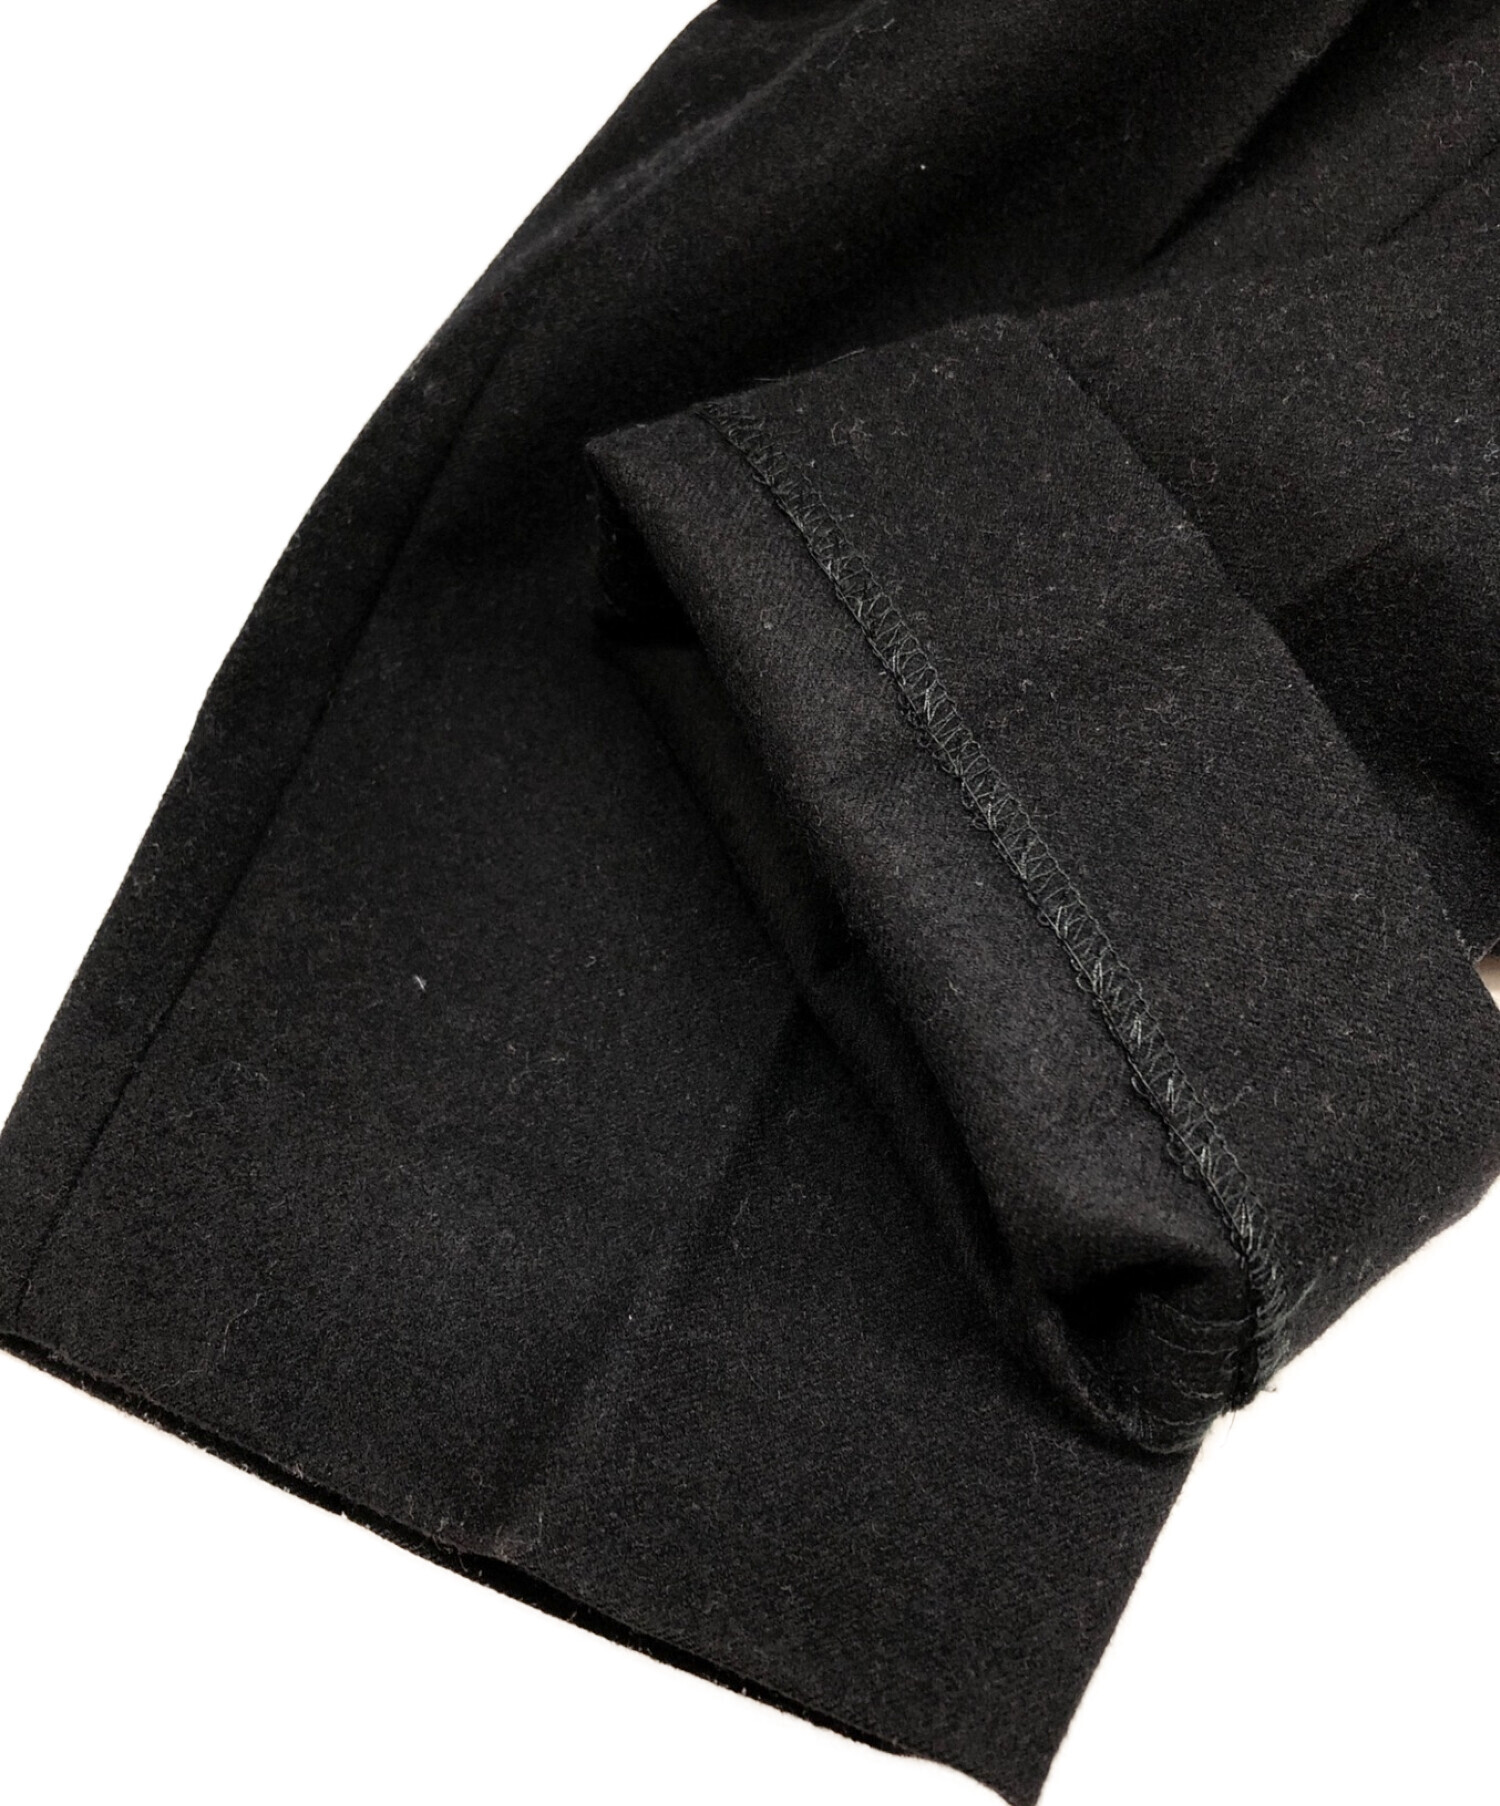 MARKAWARE (マーカウェア) FRONT PLEATS PEGTOP ORGANIC WOOL SURVIVAL CLOTH/ロント プリーツ  ペグトップ オーガニック ウール サバイバル クロス ブラック サイズ:2